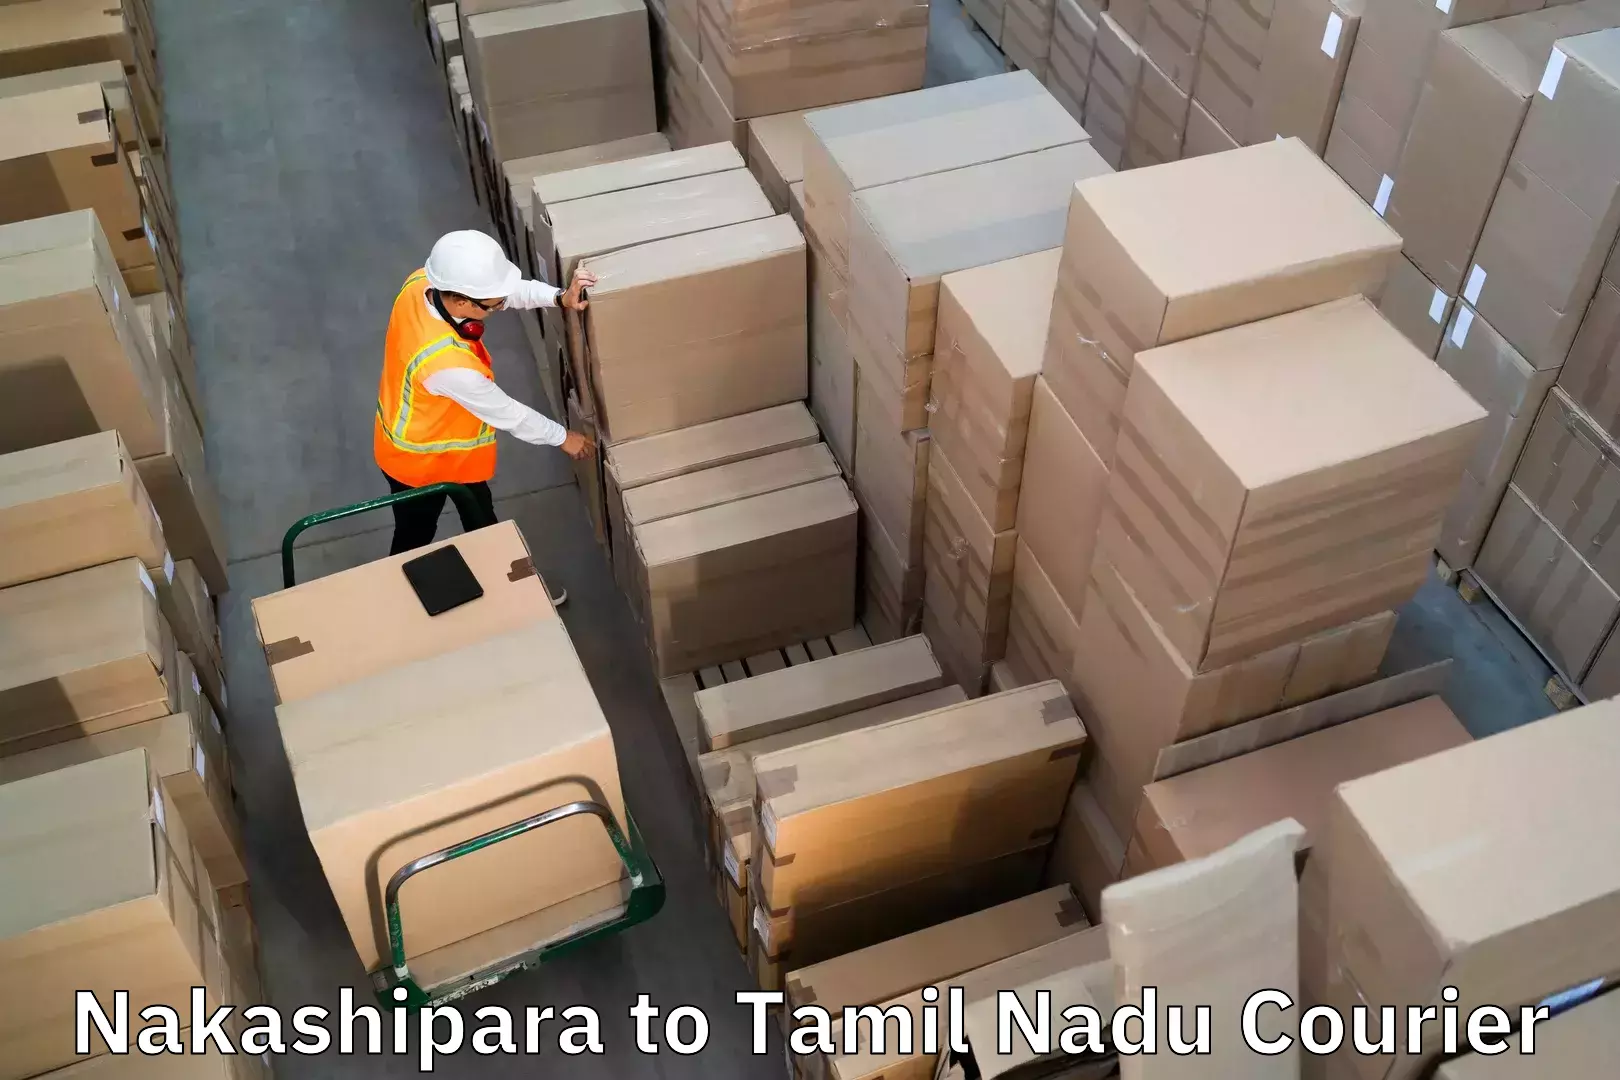 Luggage delivery estimate Nakashipara to Melur